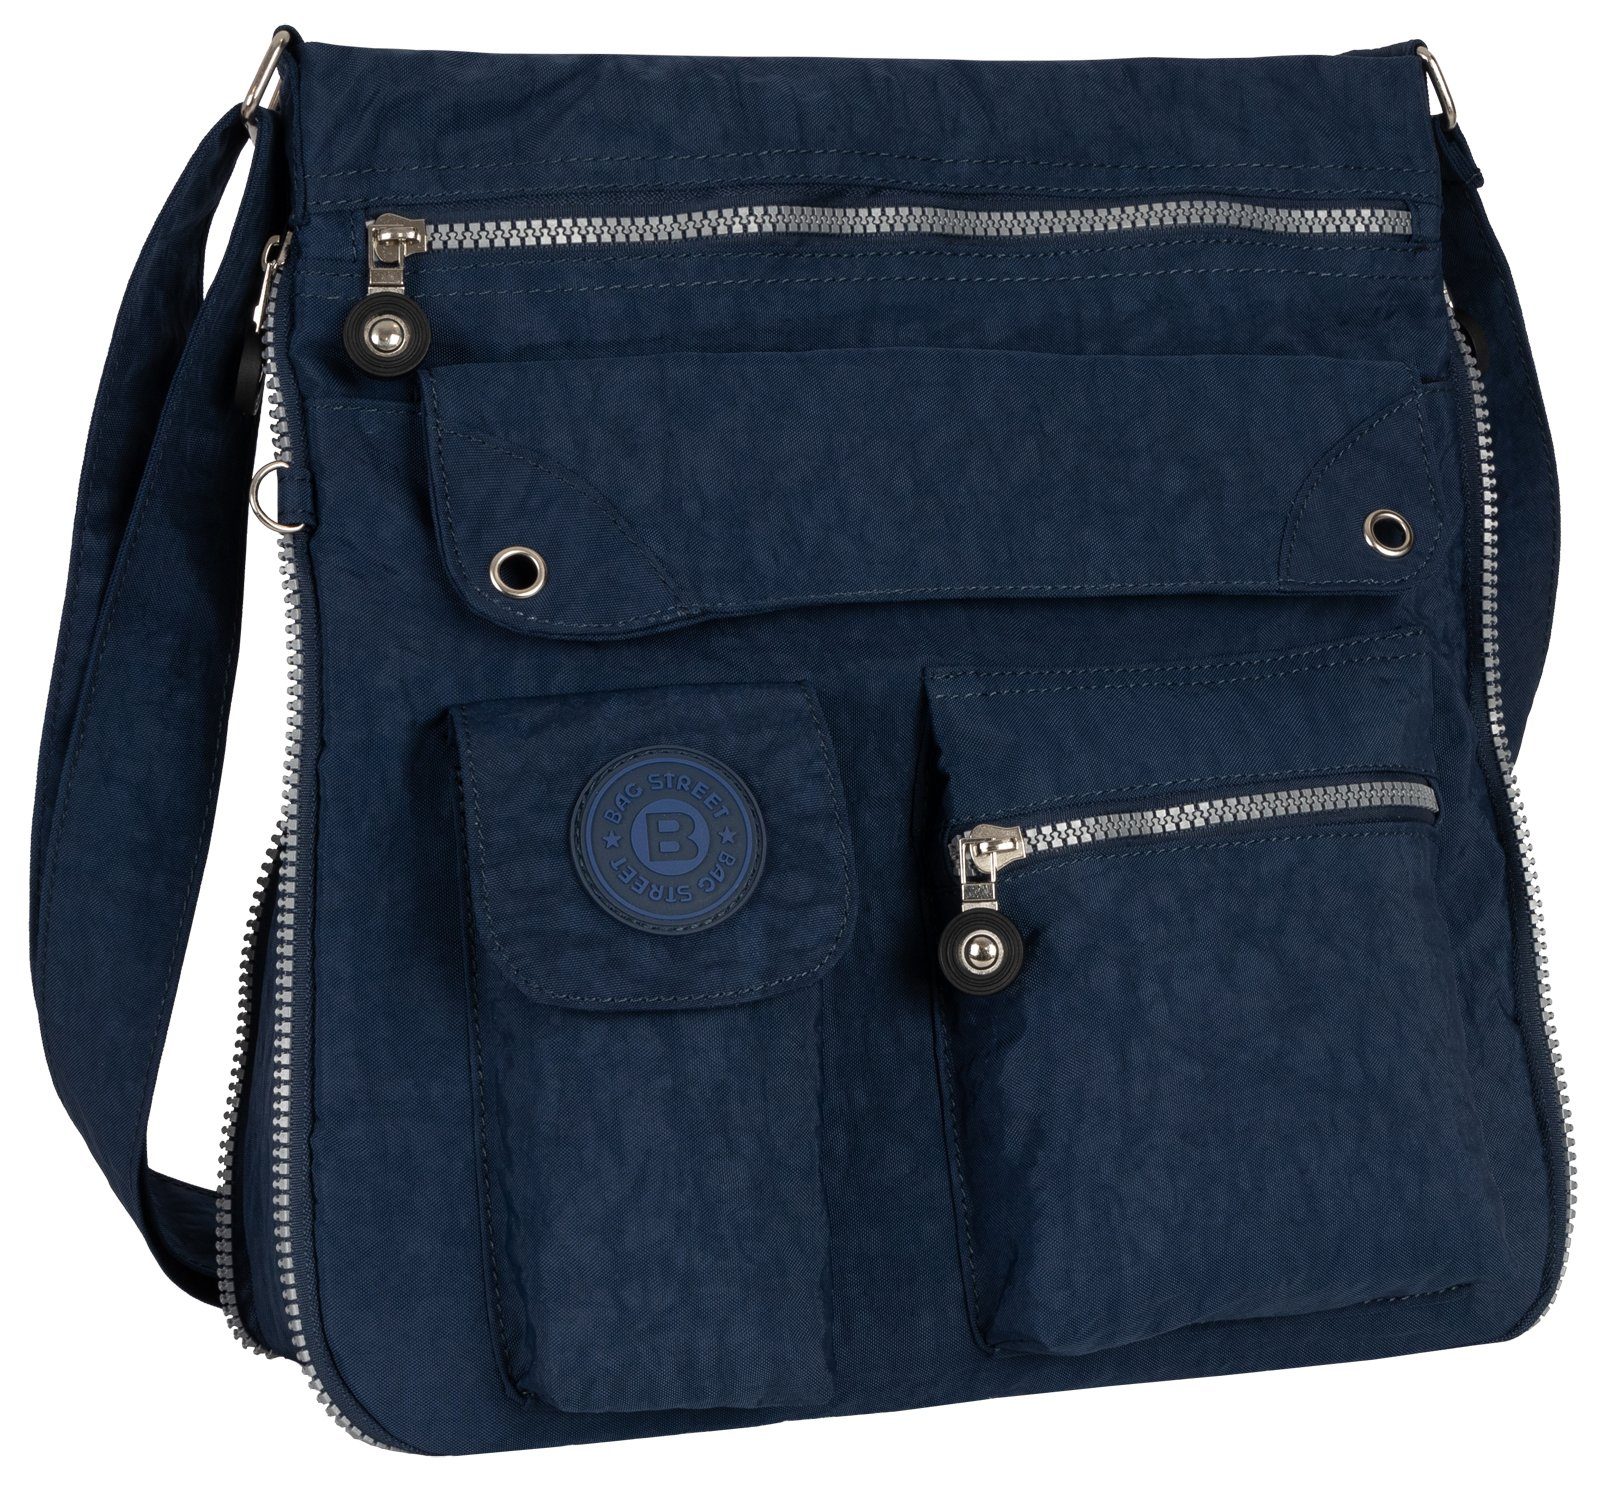 BAG STREET Schlüsseltasche Damentasche Umhängetasche Handtasche Schultertasche Schwarz, als Schultertasche, Umhängetasche tragbar Blau